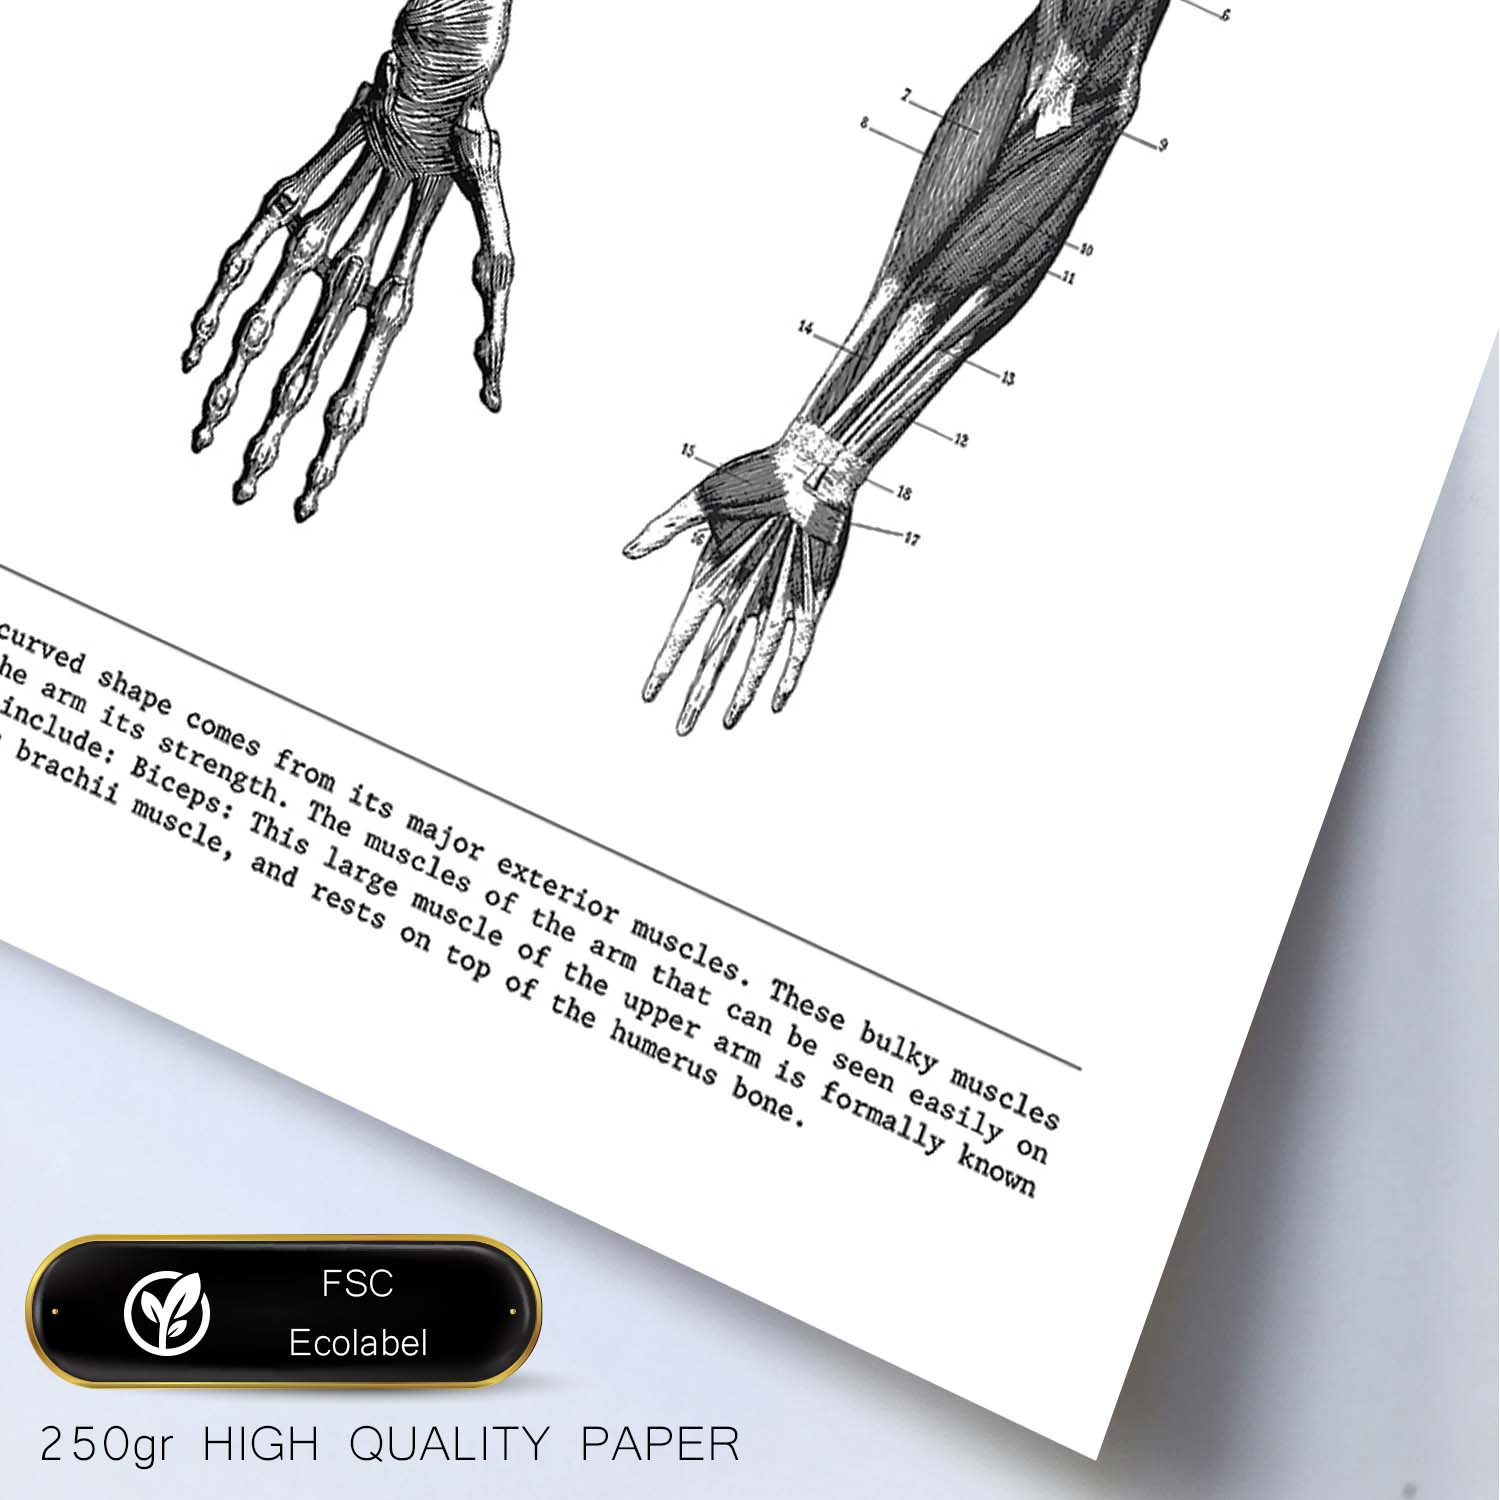 Posters de anatomía en blanco y negro con imágenes del cuerpo humano. Láminas de "Brazo". .-Artwork-Nacnic-Nacnic Estudio SL